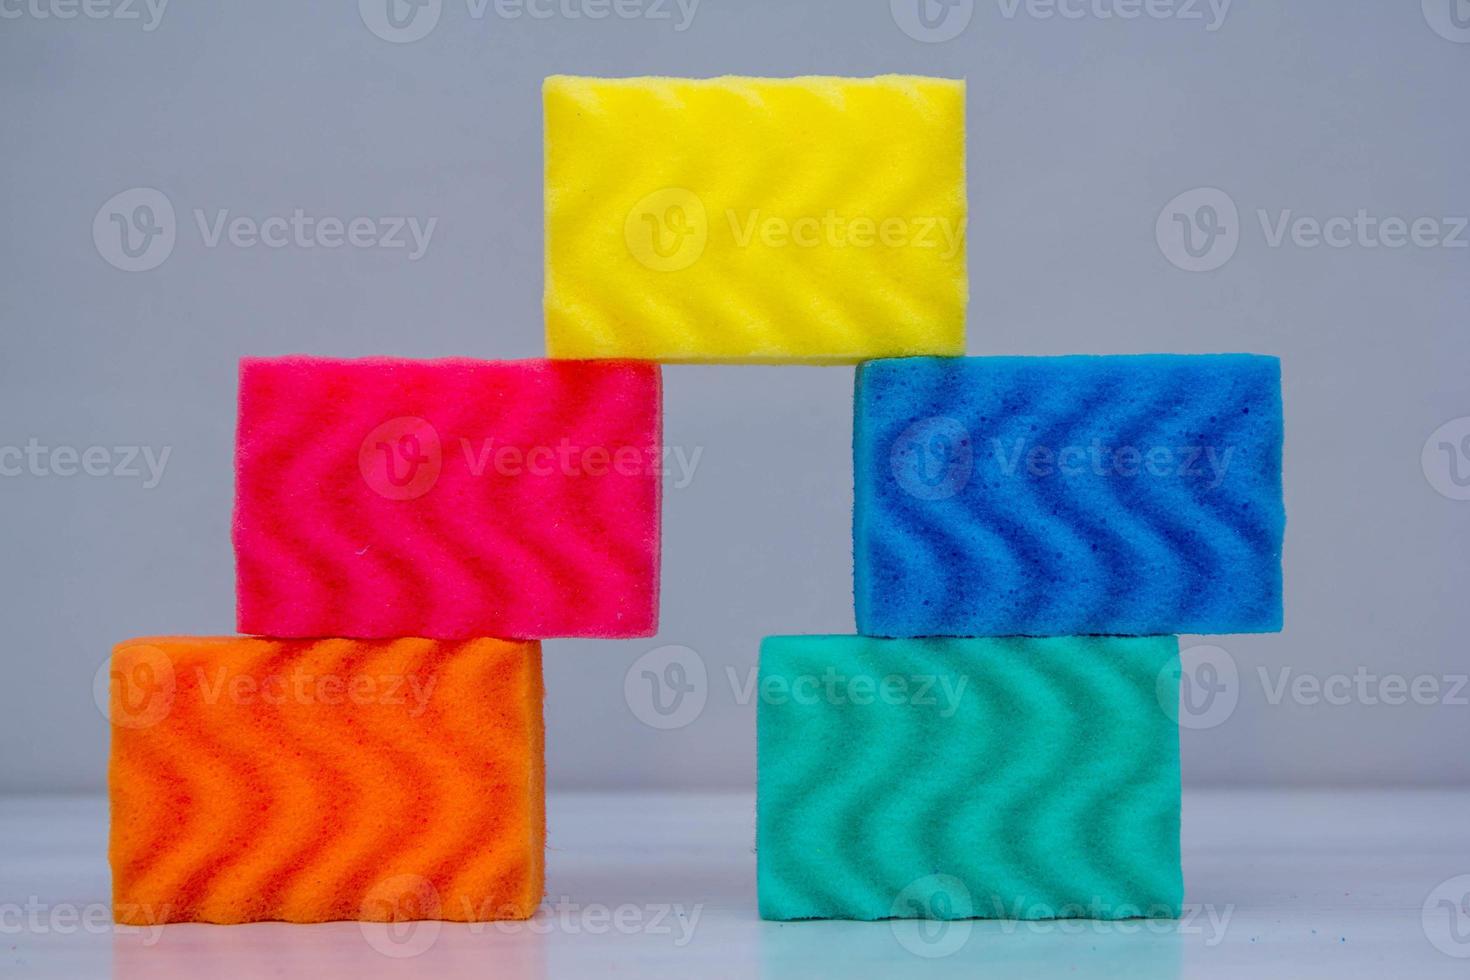 éponges multicolores pour nettoyer et laver la vaisselle sur une table blanche photo